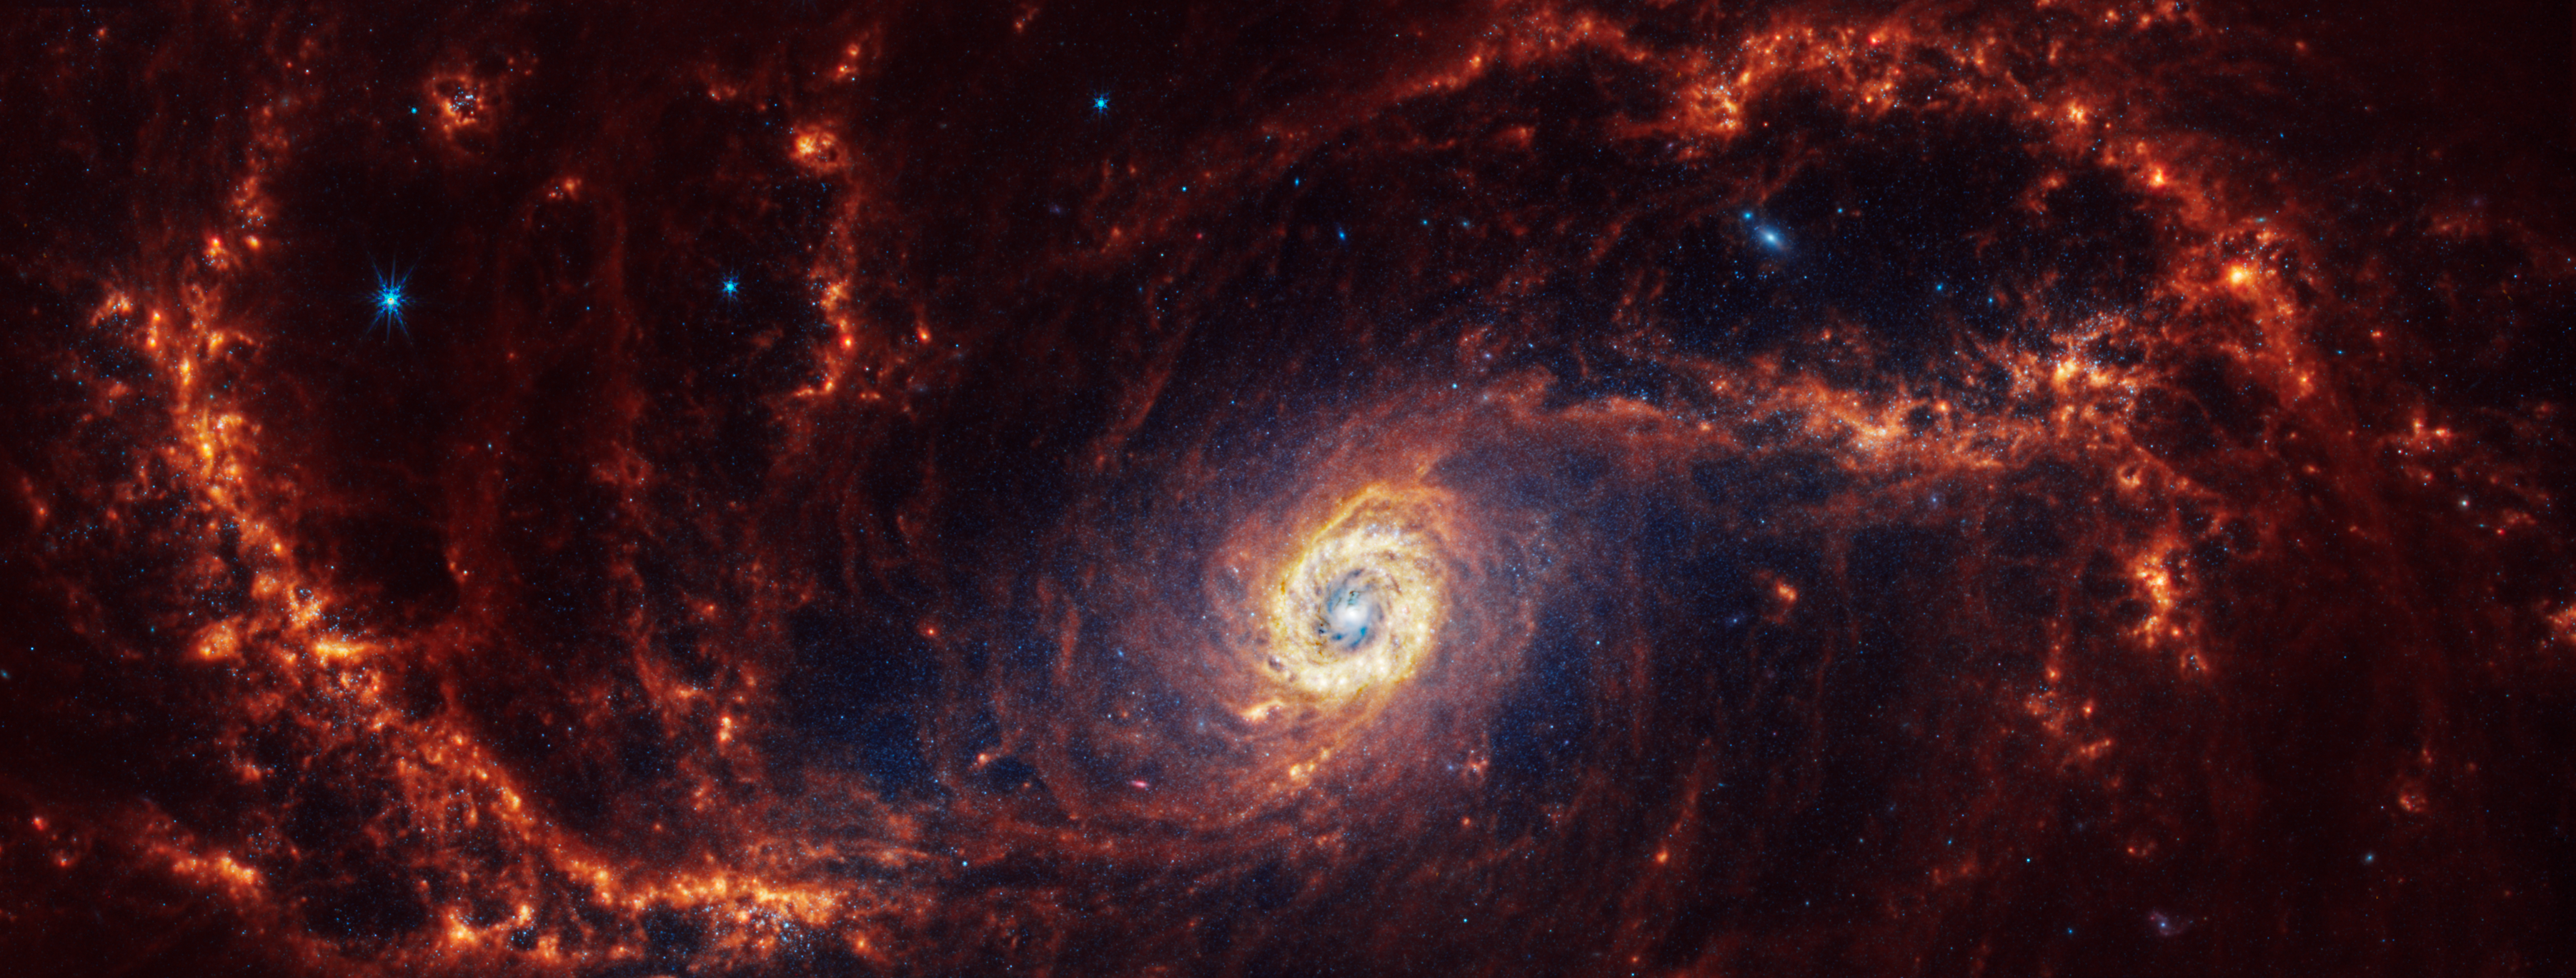 NGC 1672 si trova a 60 milioni di anni luce di distanza nella costellazione del Dorado.